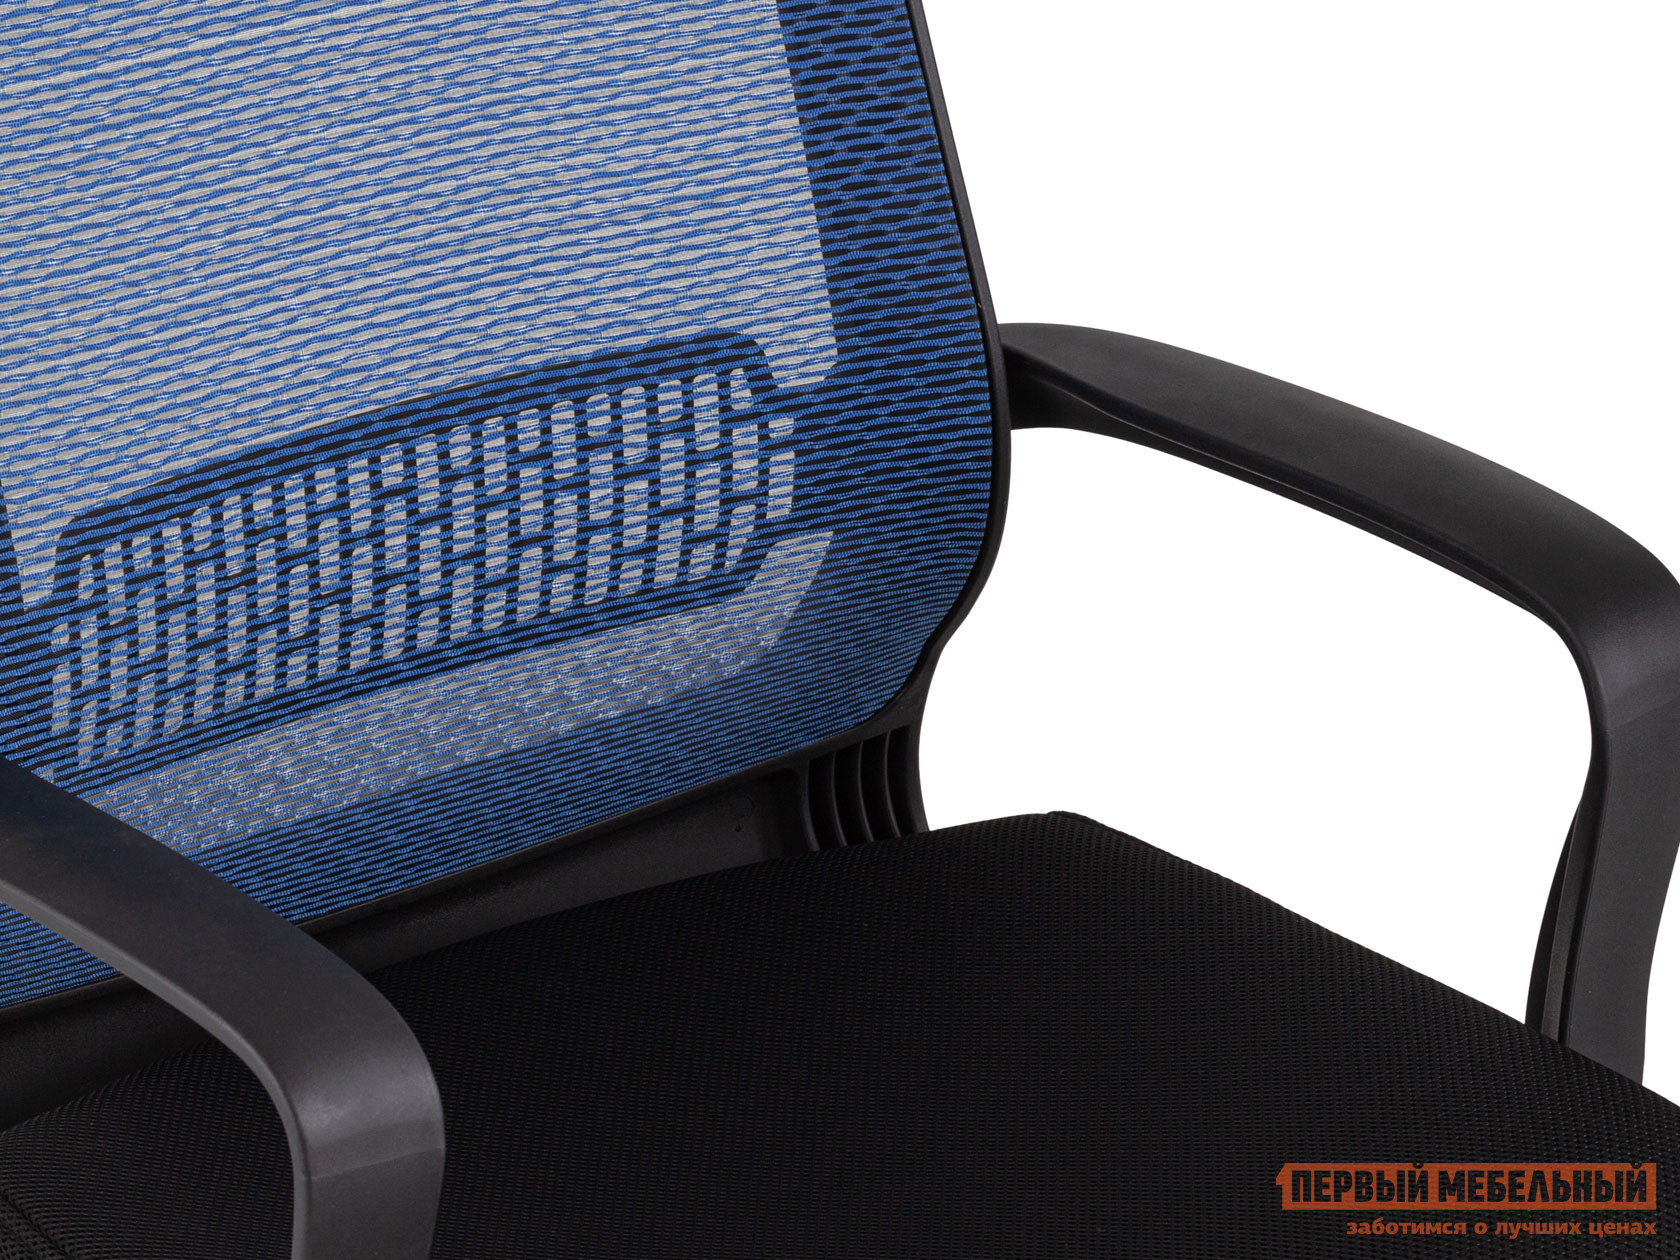 Офисное кресло  TopChairs Style Черный, сетка / Синий, сетка от Первый Мебельный